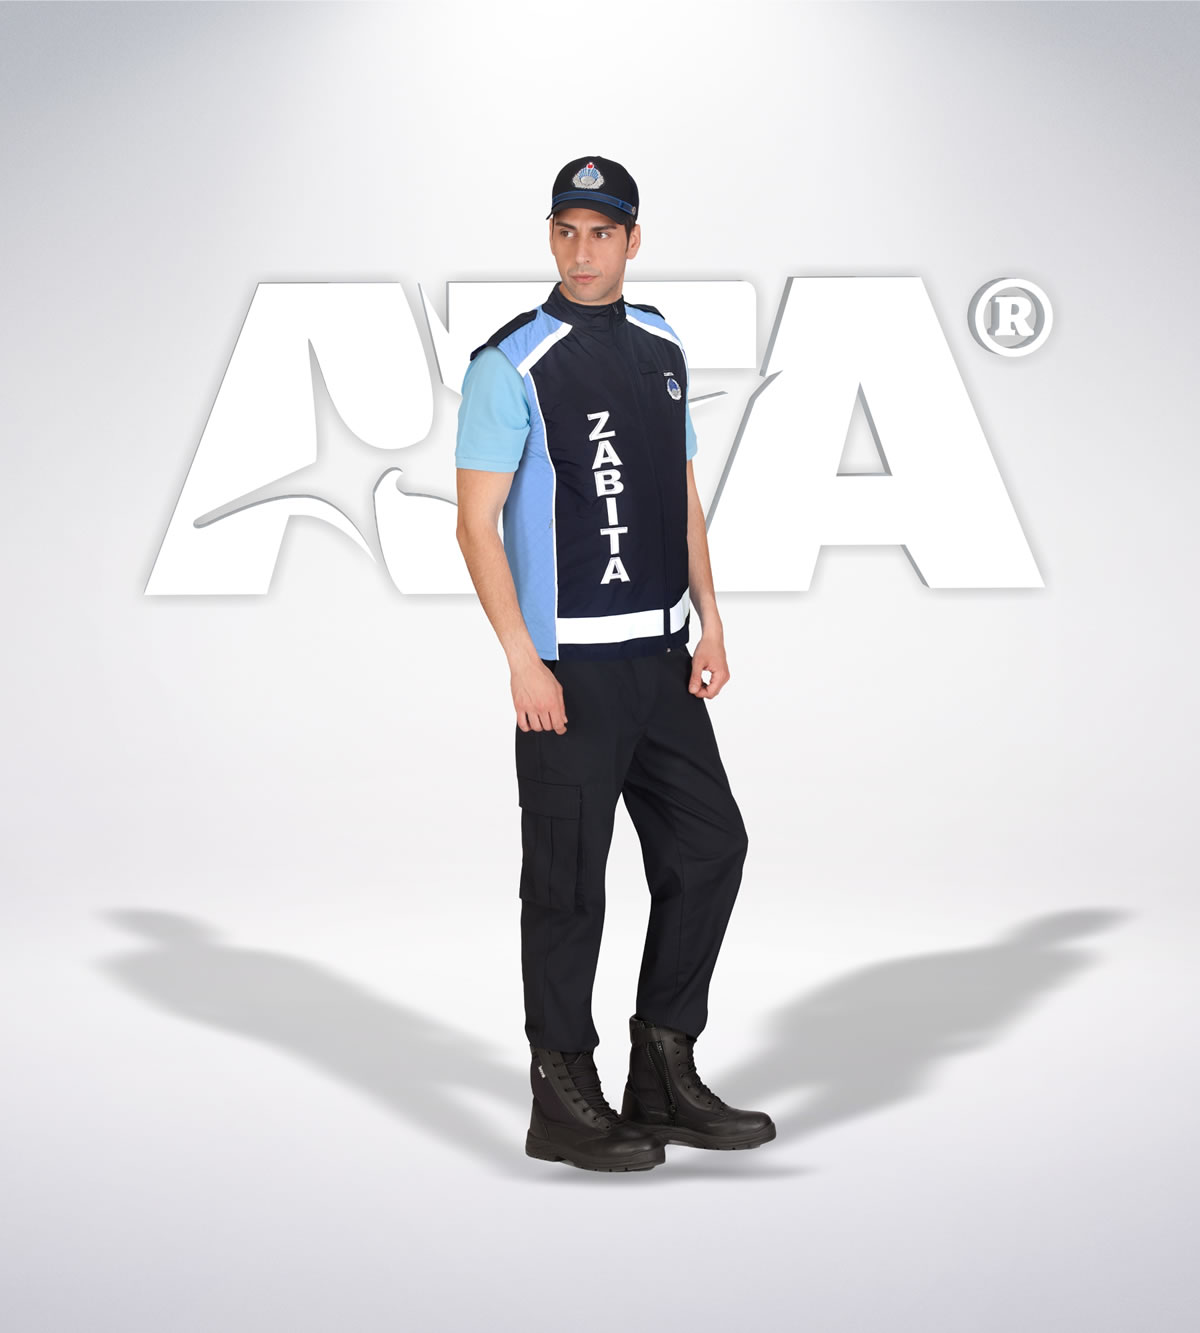 ATA 211 - ön - Ribstop kumaş pantolon - reflektör yelek - t shirt - aksesuar- zabıta elbiseleri | zabıta üniformaları | zabıta kıyafetleri 